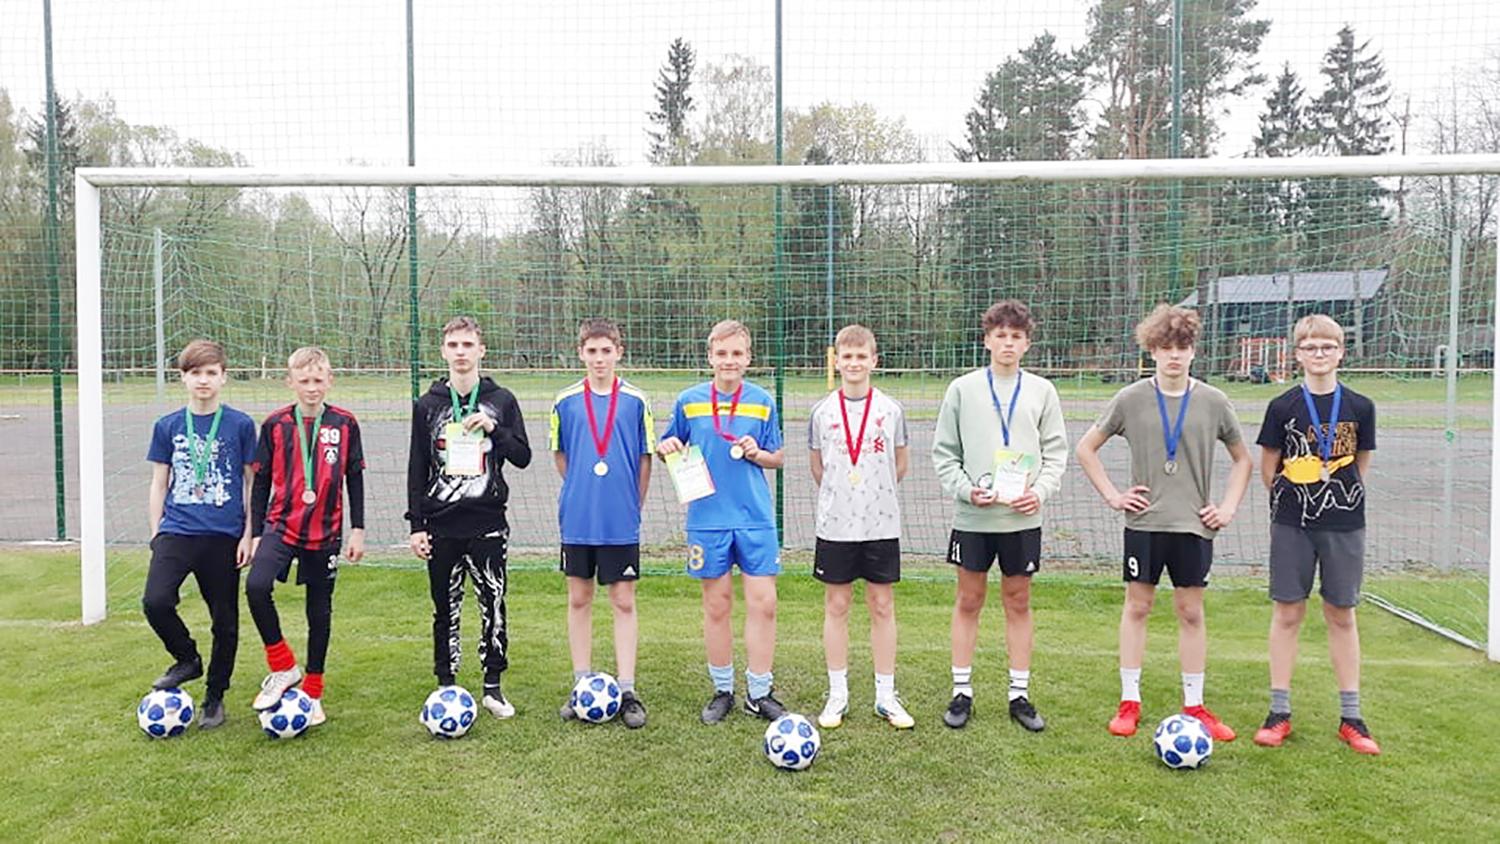 Ukmergės sporto centro stadione / Dukstynos pagrindinės mokyklos komanda laimėjo pirmą vietą.